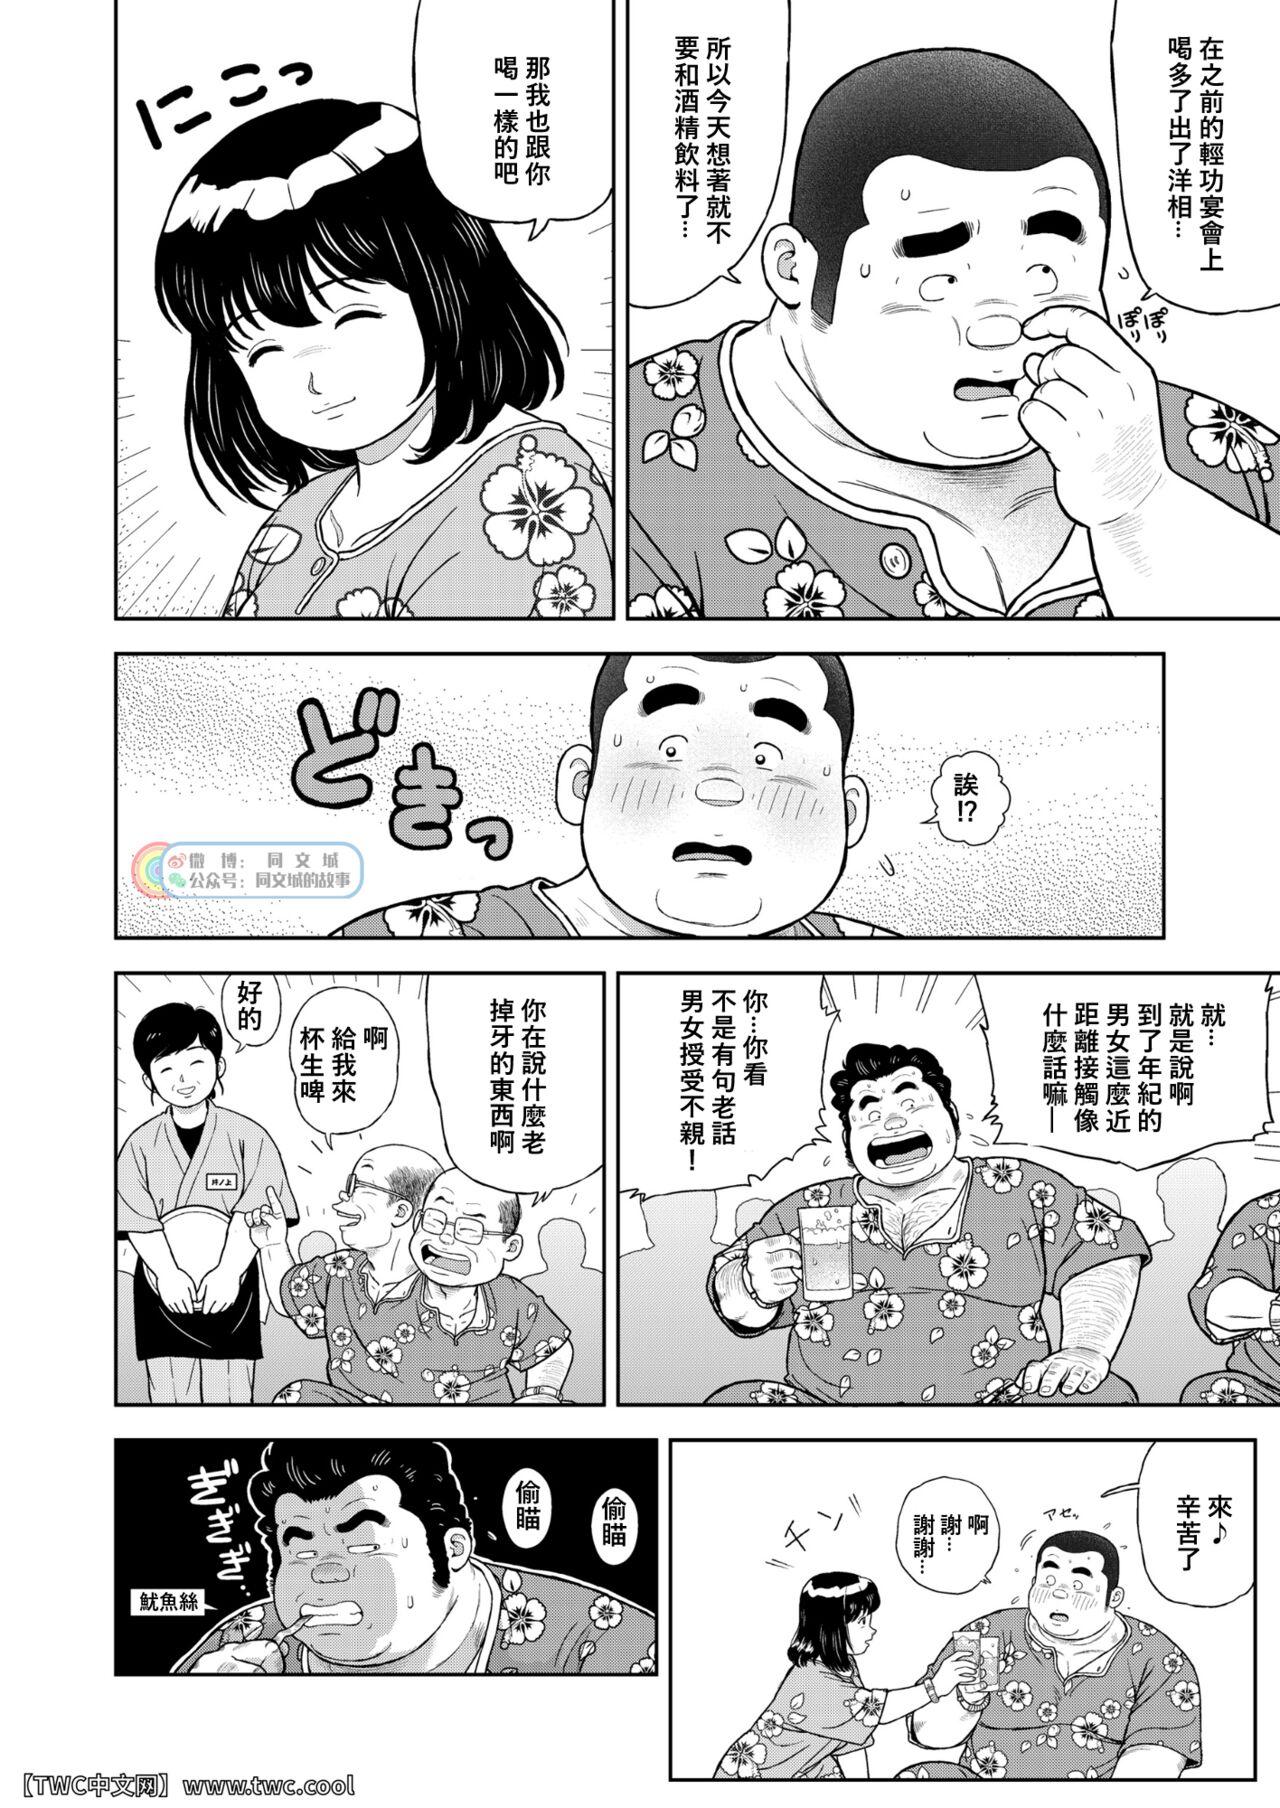 Sixtynine Kunoyu Nijyunanahatsume Anokane o Narasunohadonata - Original Peluda - Page 4